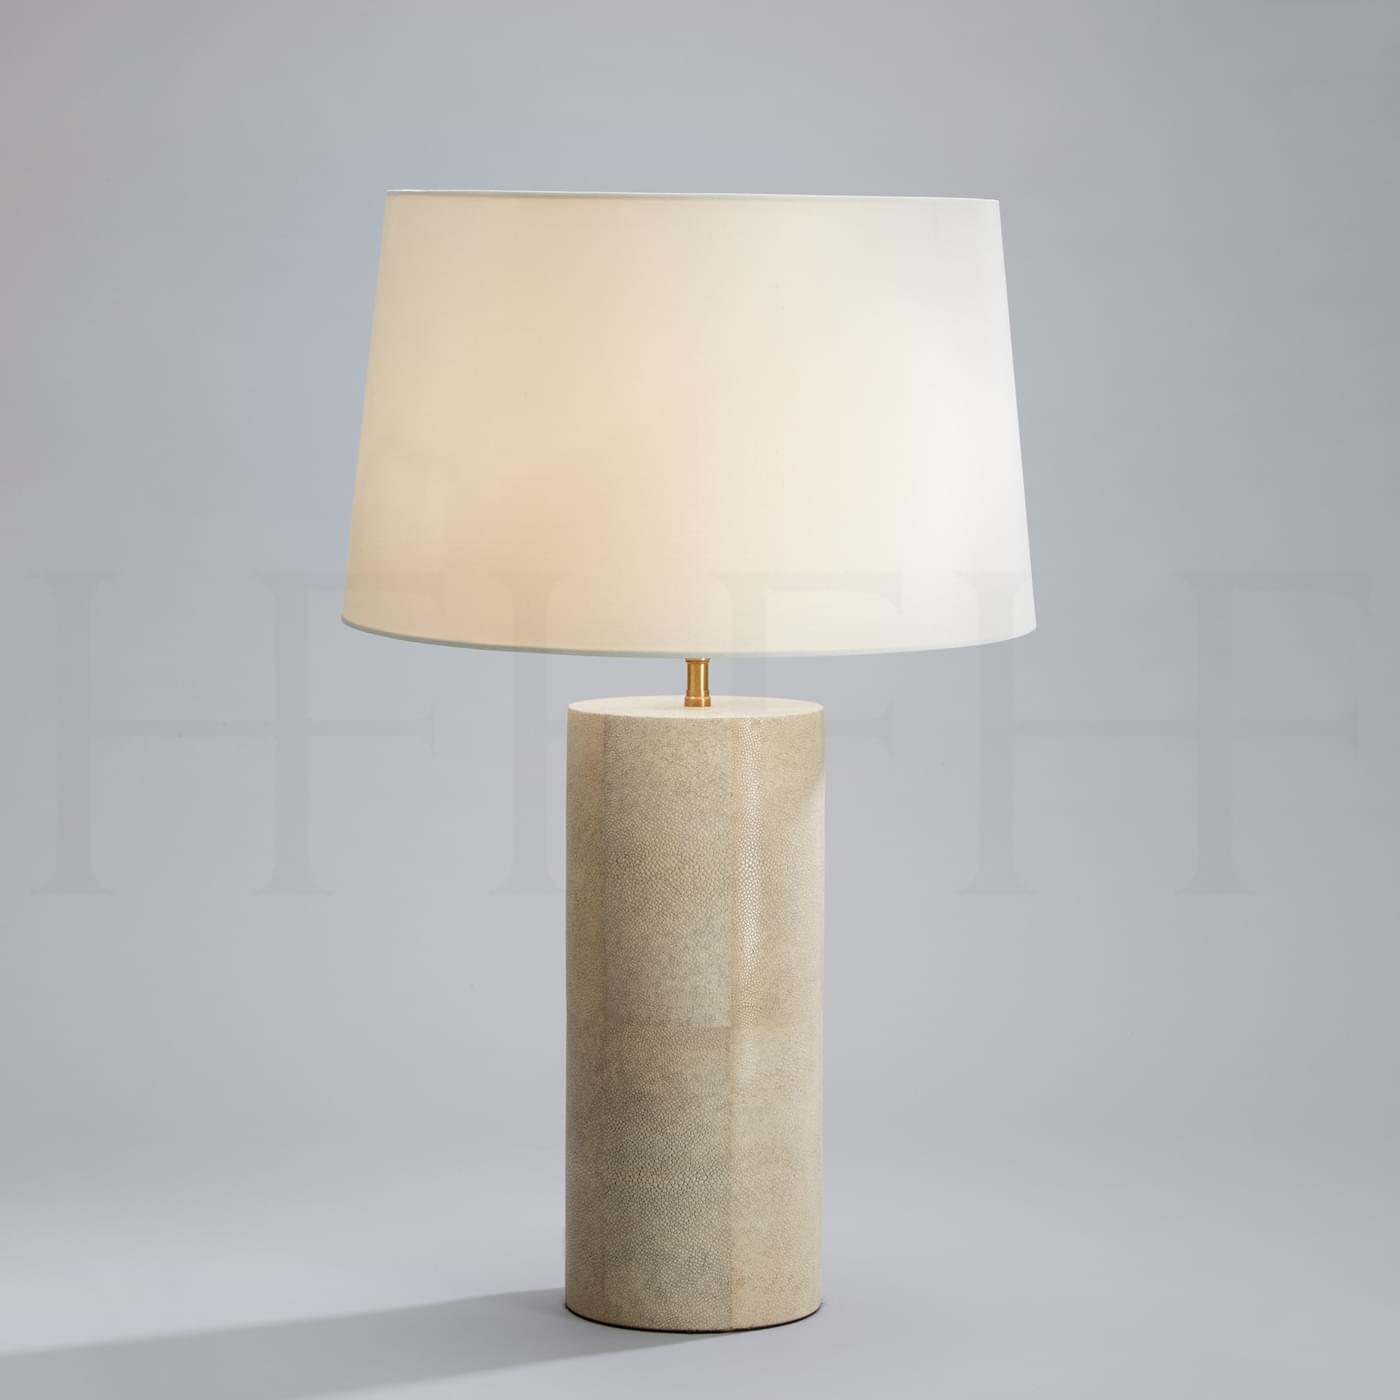 Tl83 Shagreen Table Lamp L